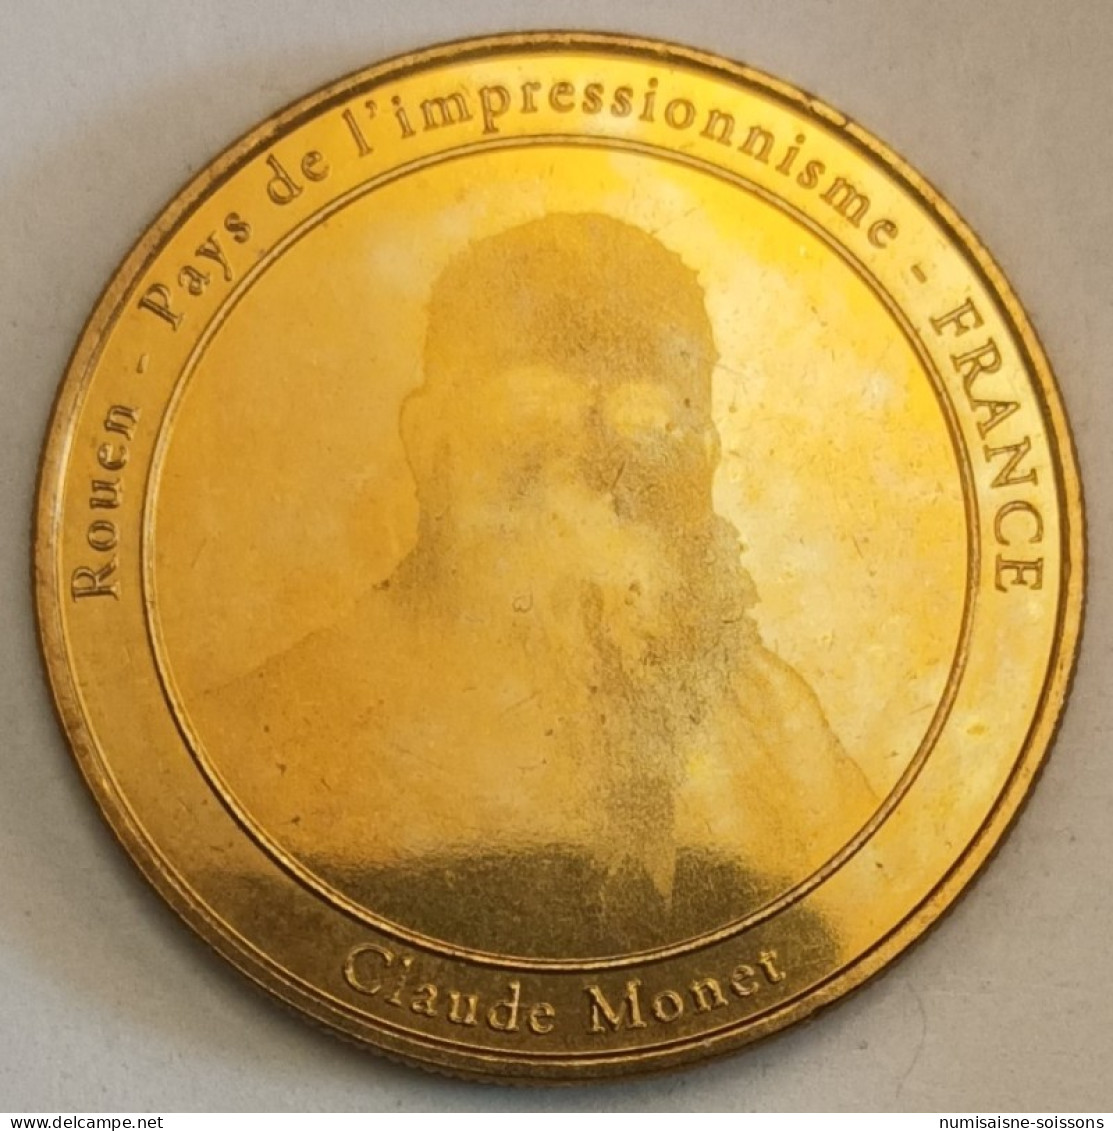 76 - ROUEN - PAYS DE L'IMPRESSIONISME - CLAUDE MONNET - MEDALART - 2013 - 2013